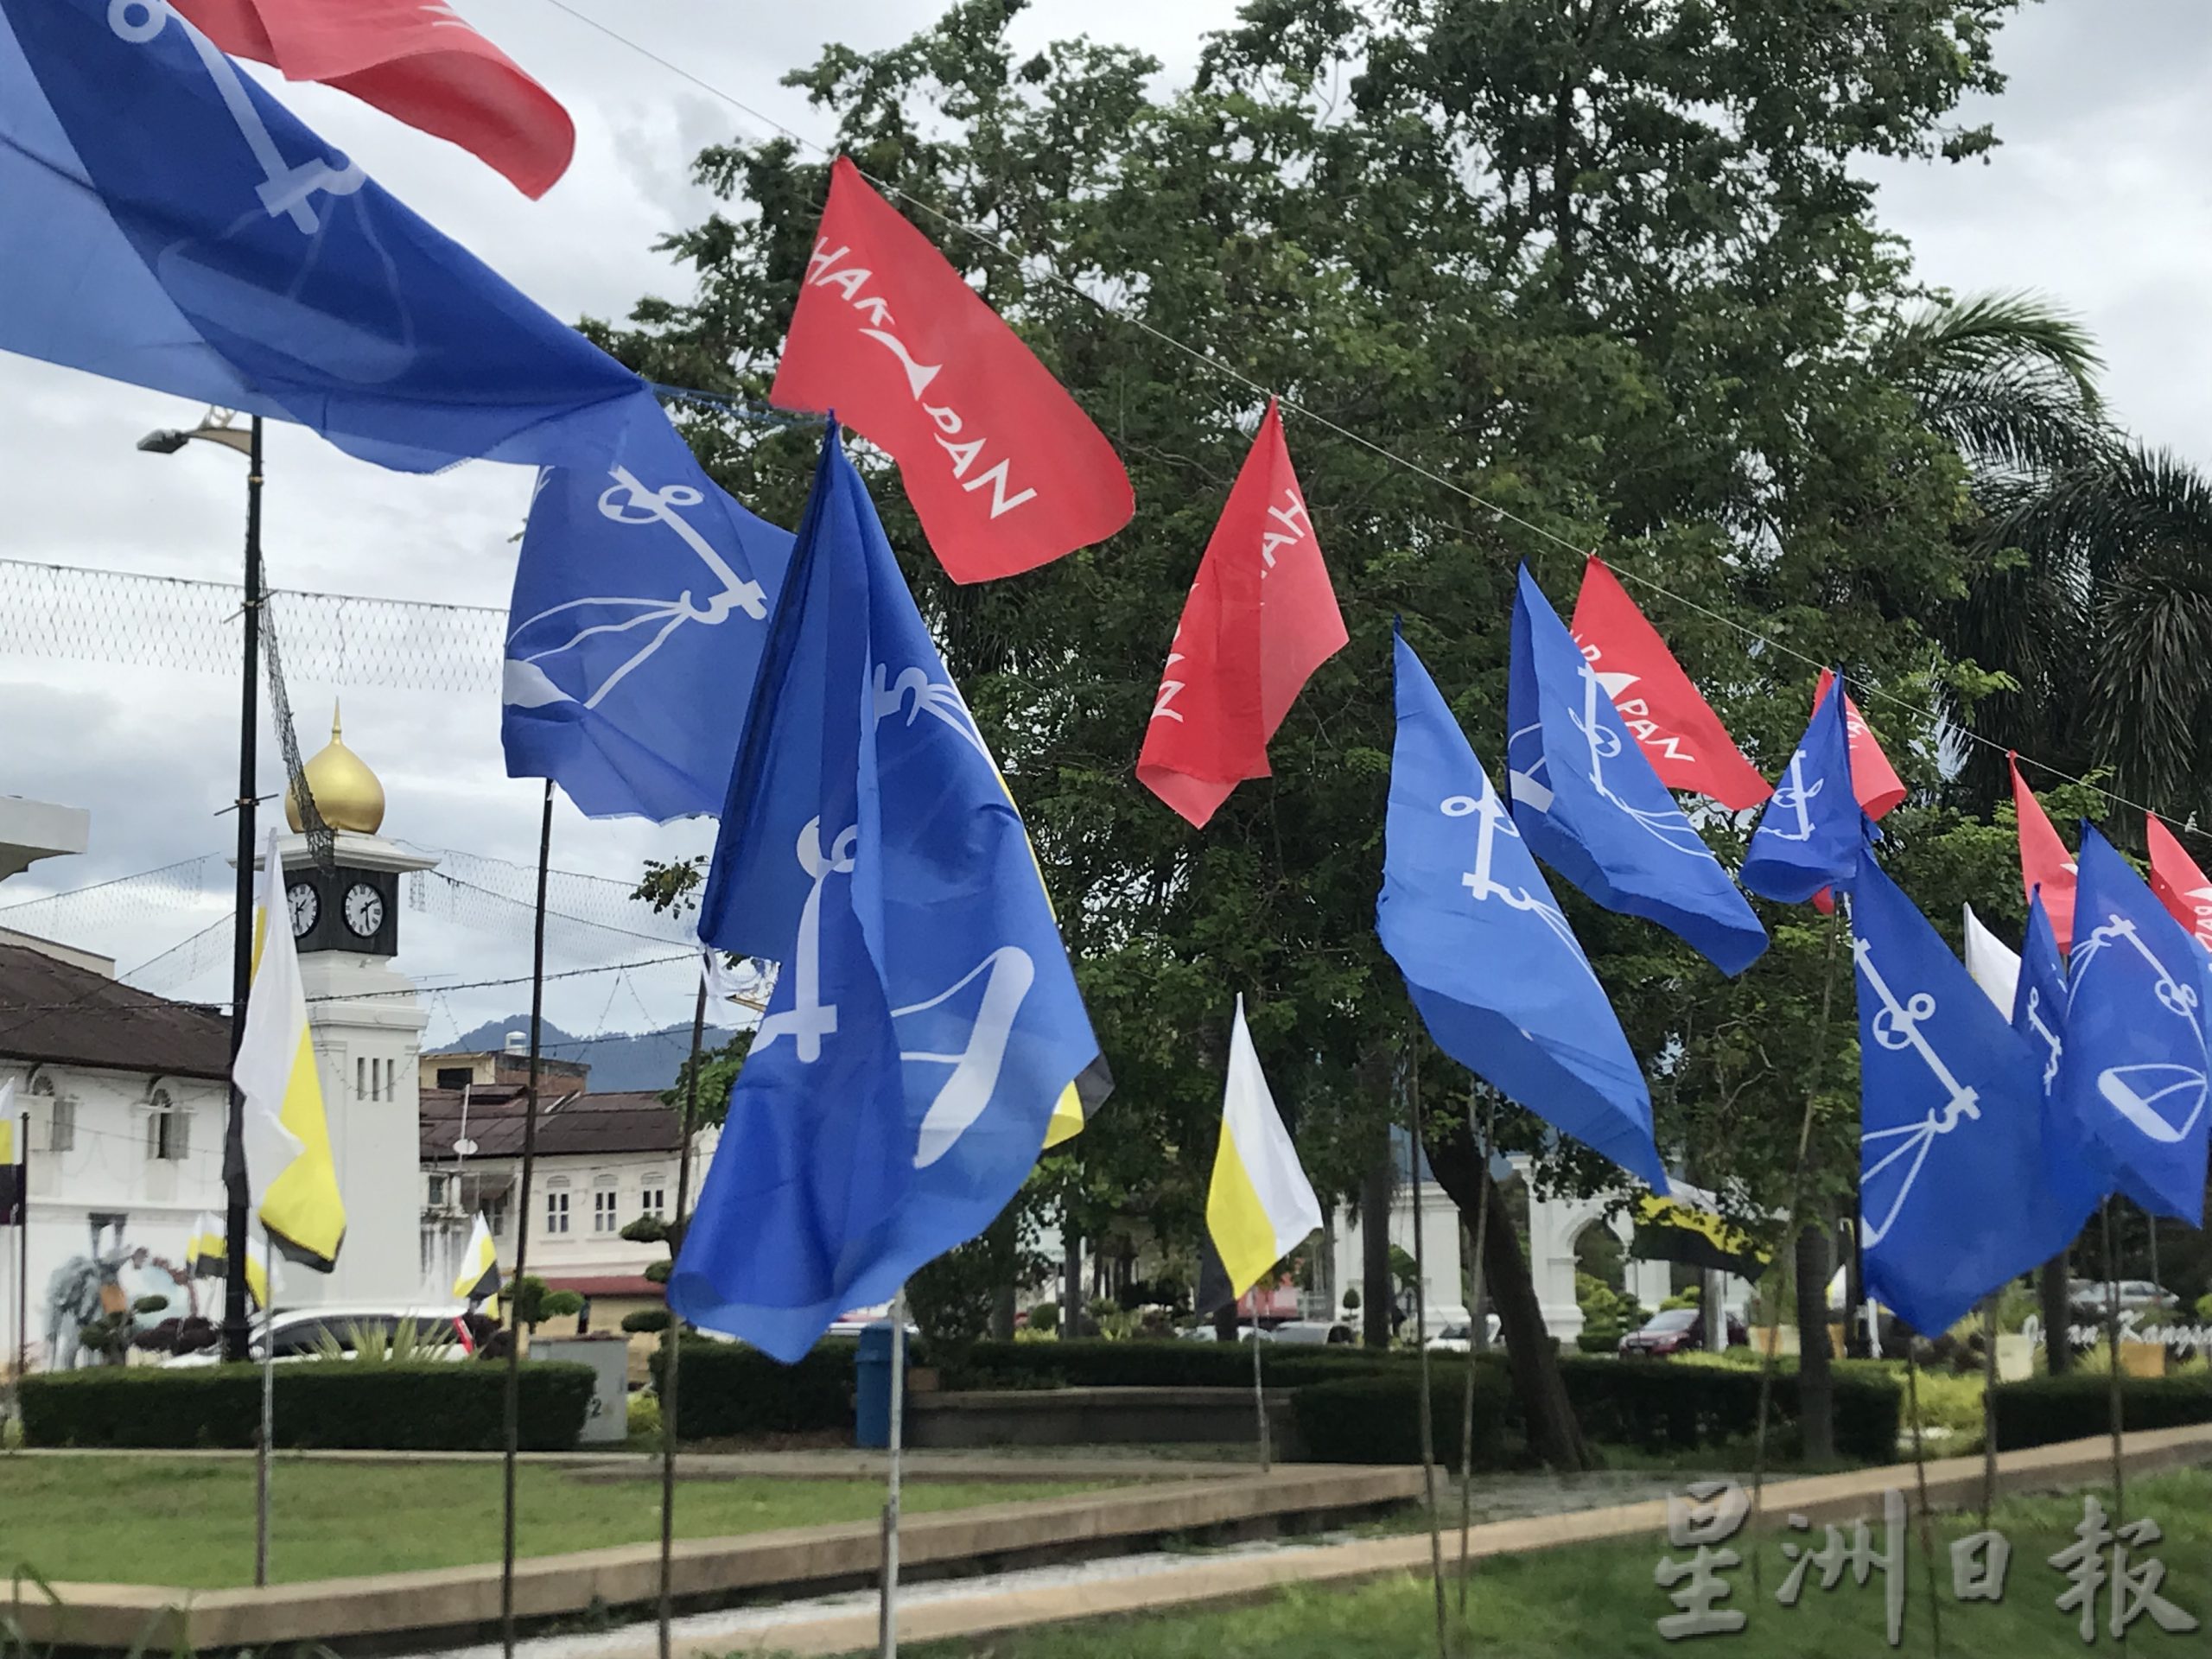 霹苏丹华诞月 政党避跟州旗“较劲” 江沙大钟楼主干路撤旗帜